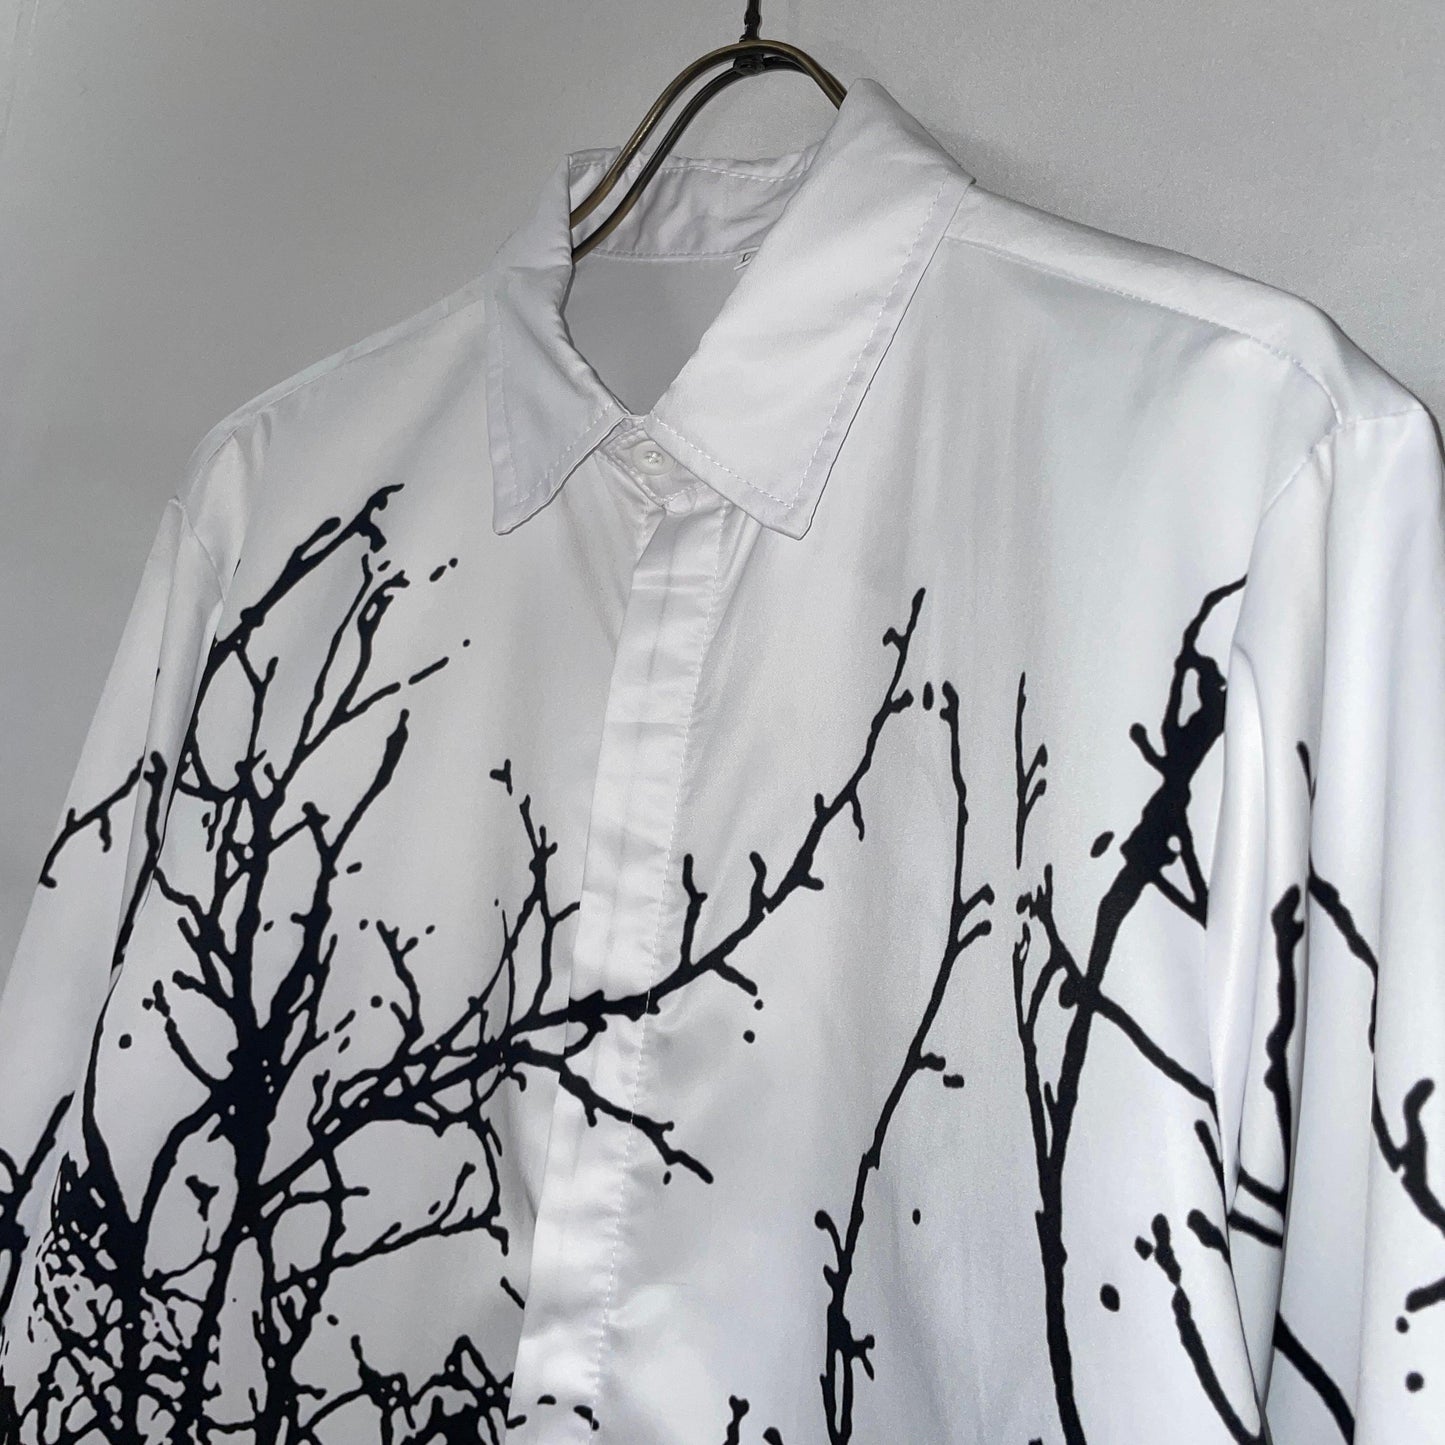 Shirt monotone tree camo shirt